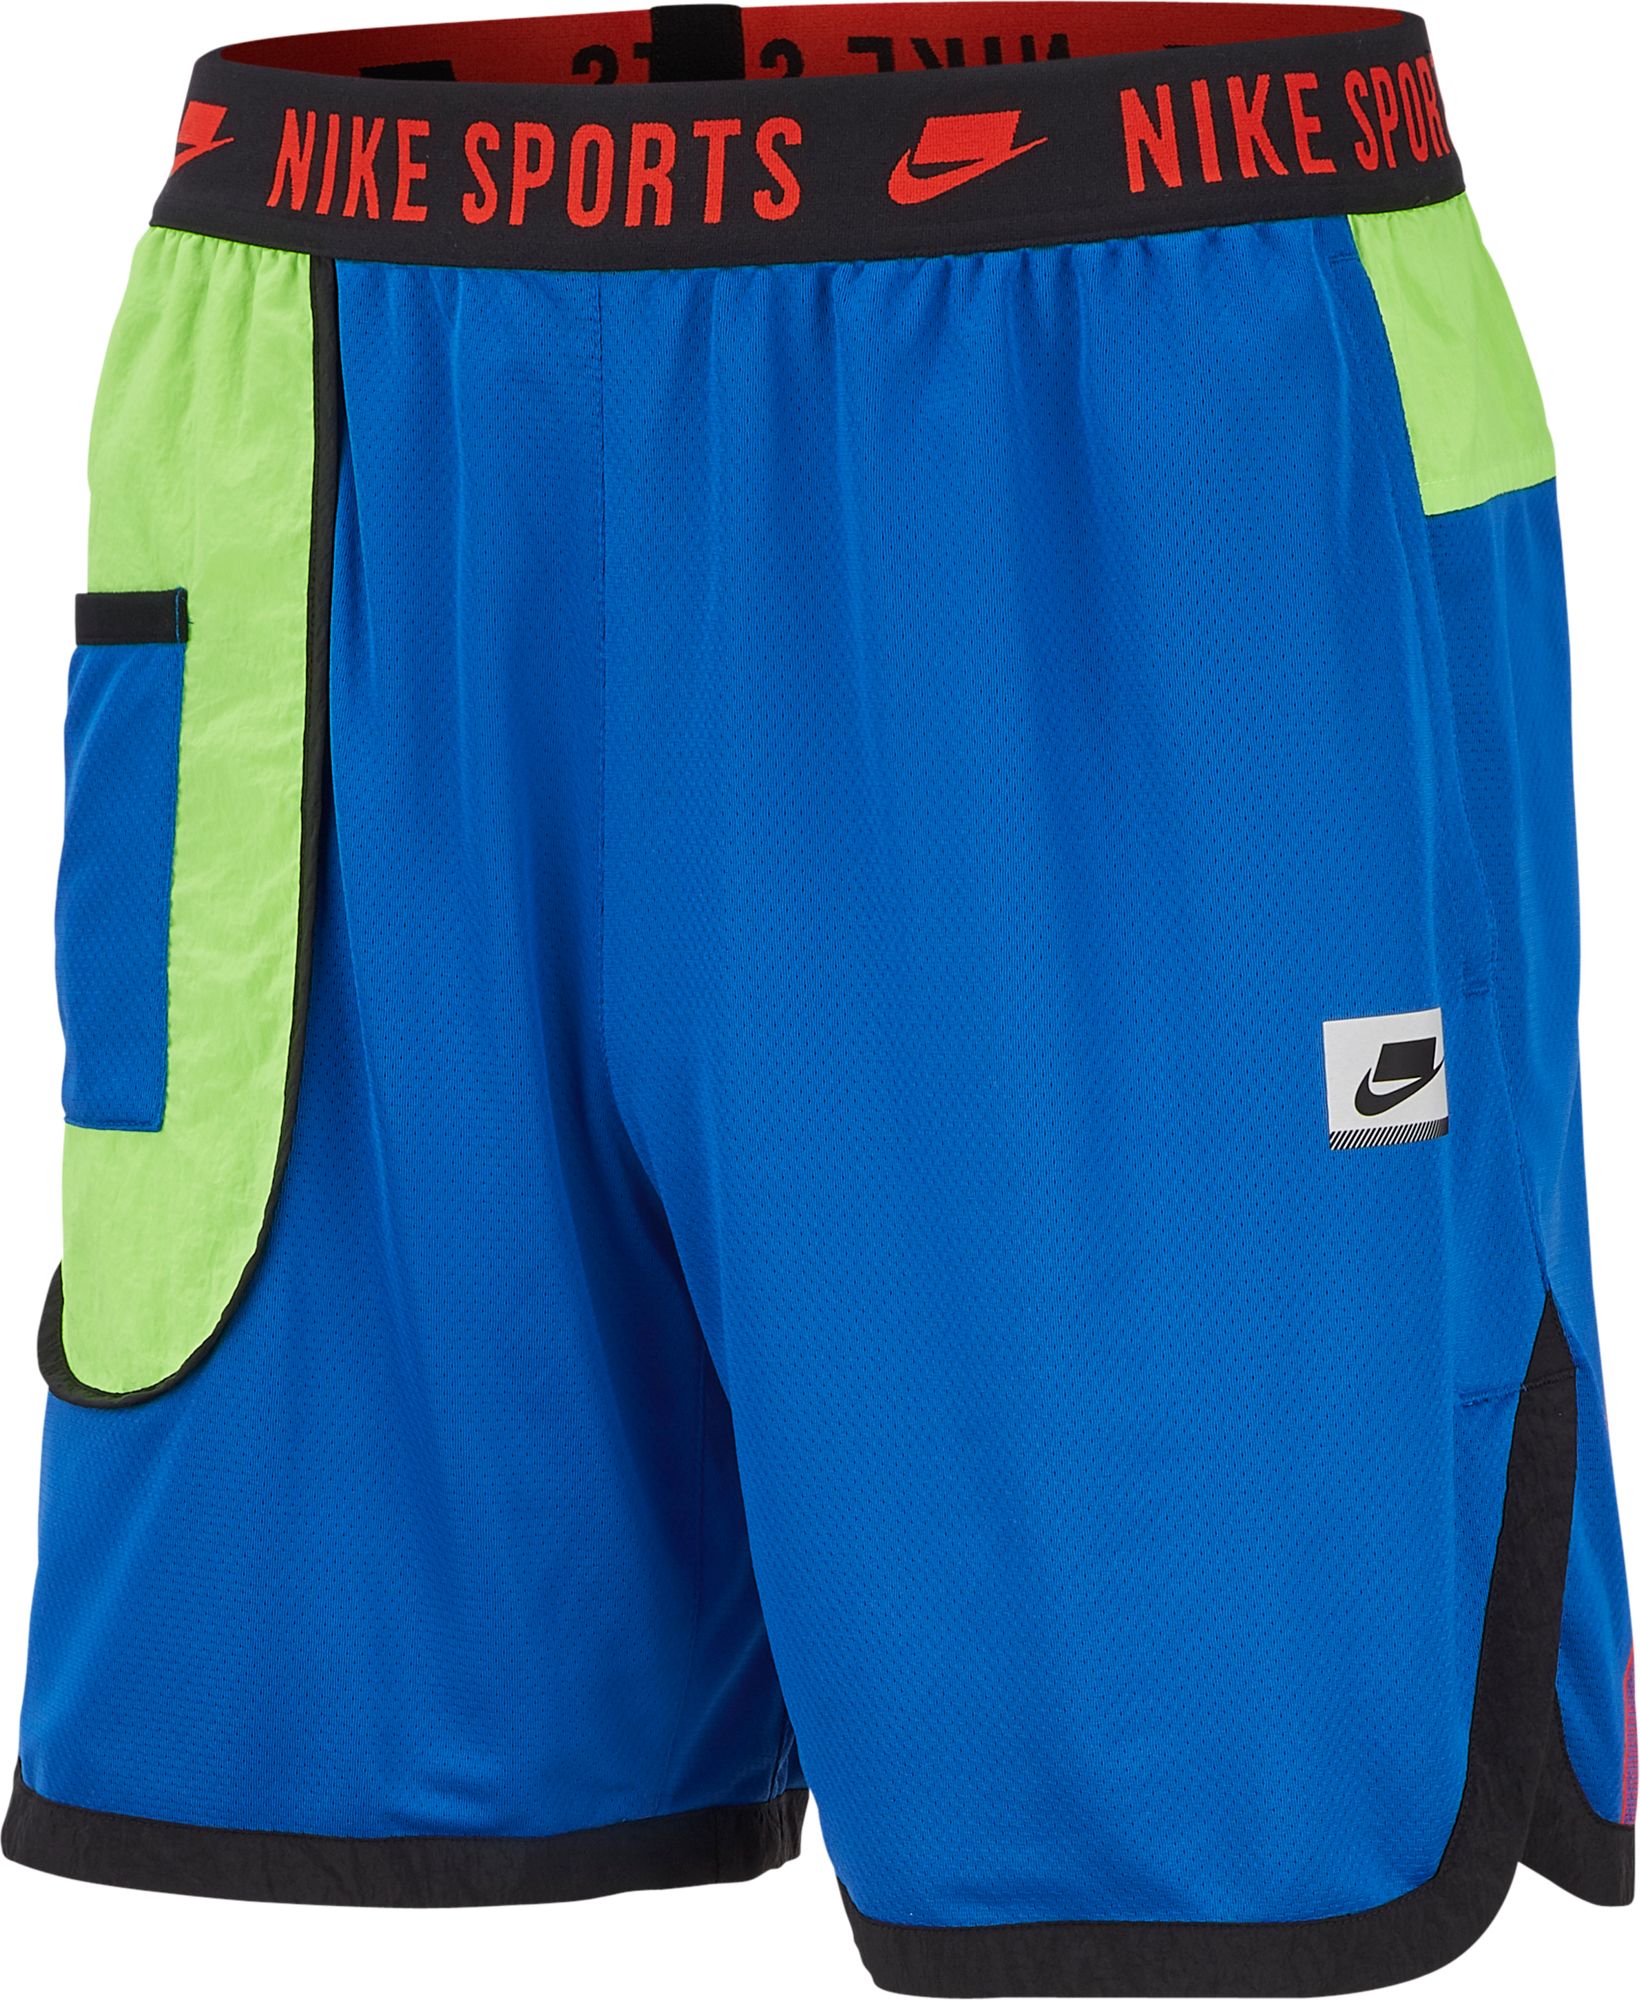 Nike Men's Dri-FIT Training Shorts - .97